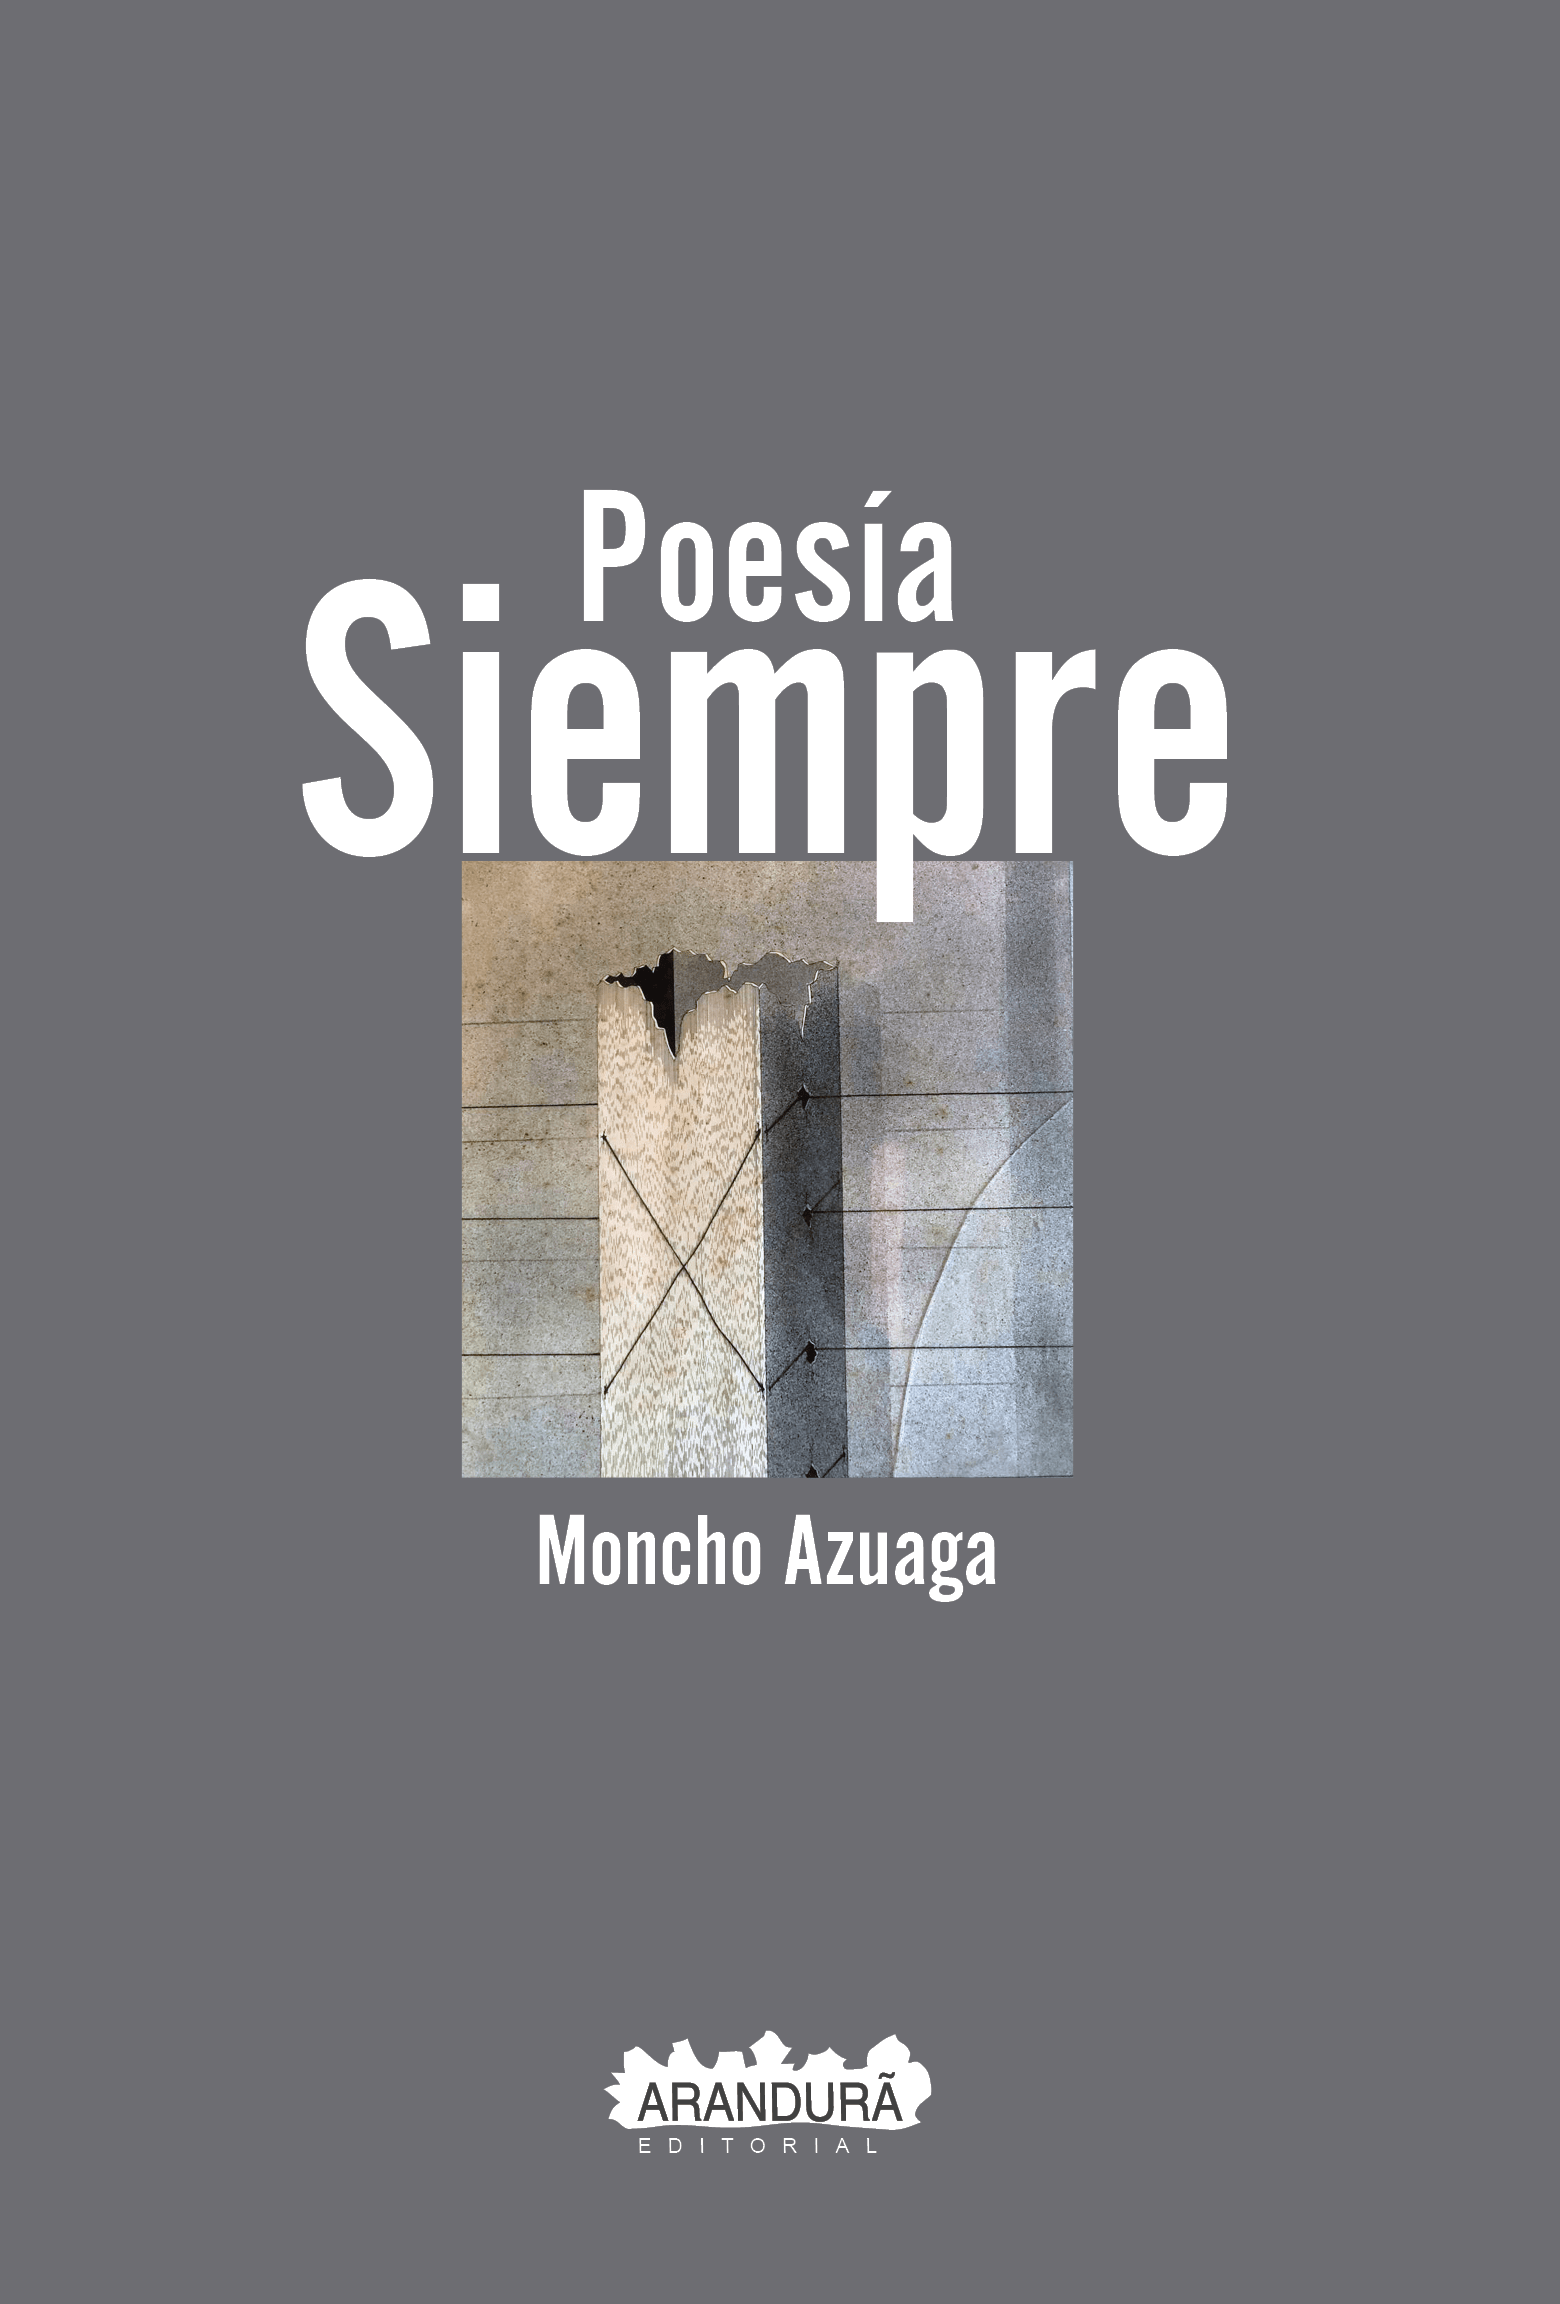 Tapa poesía siempre-Moncho Azuaga